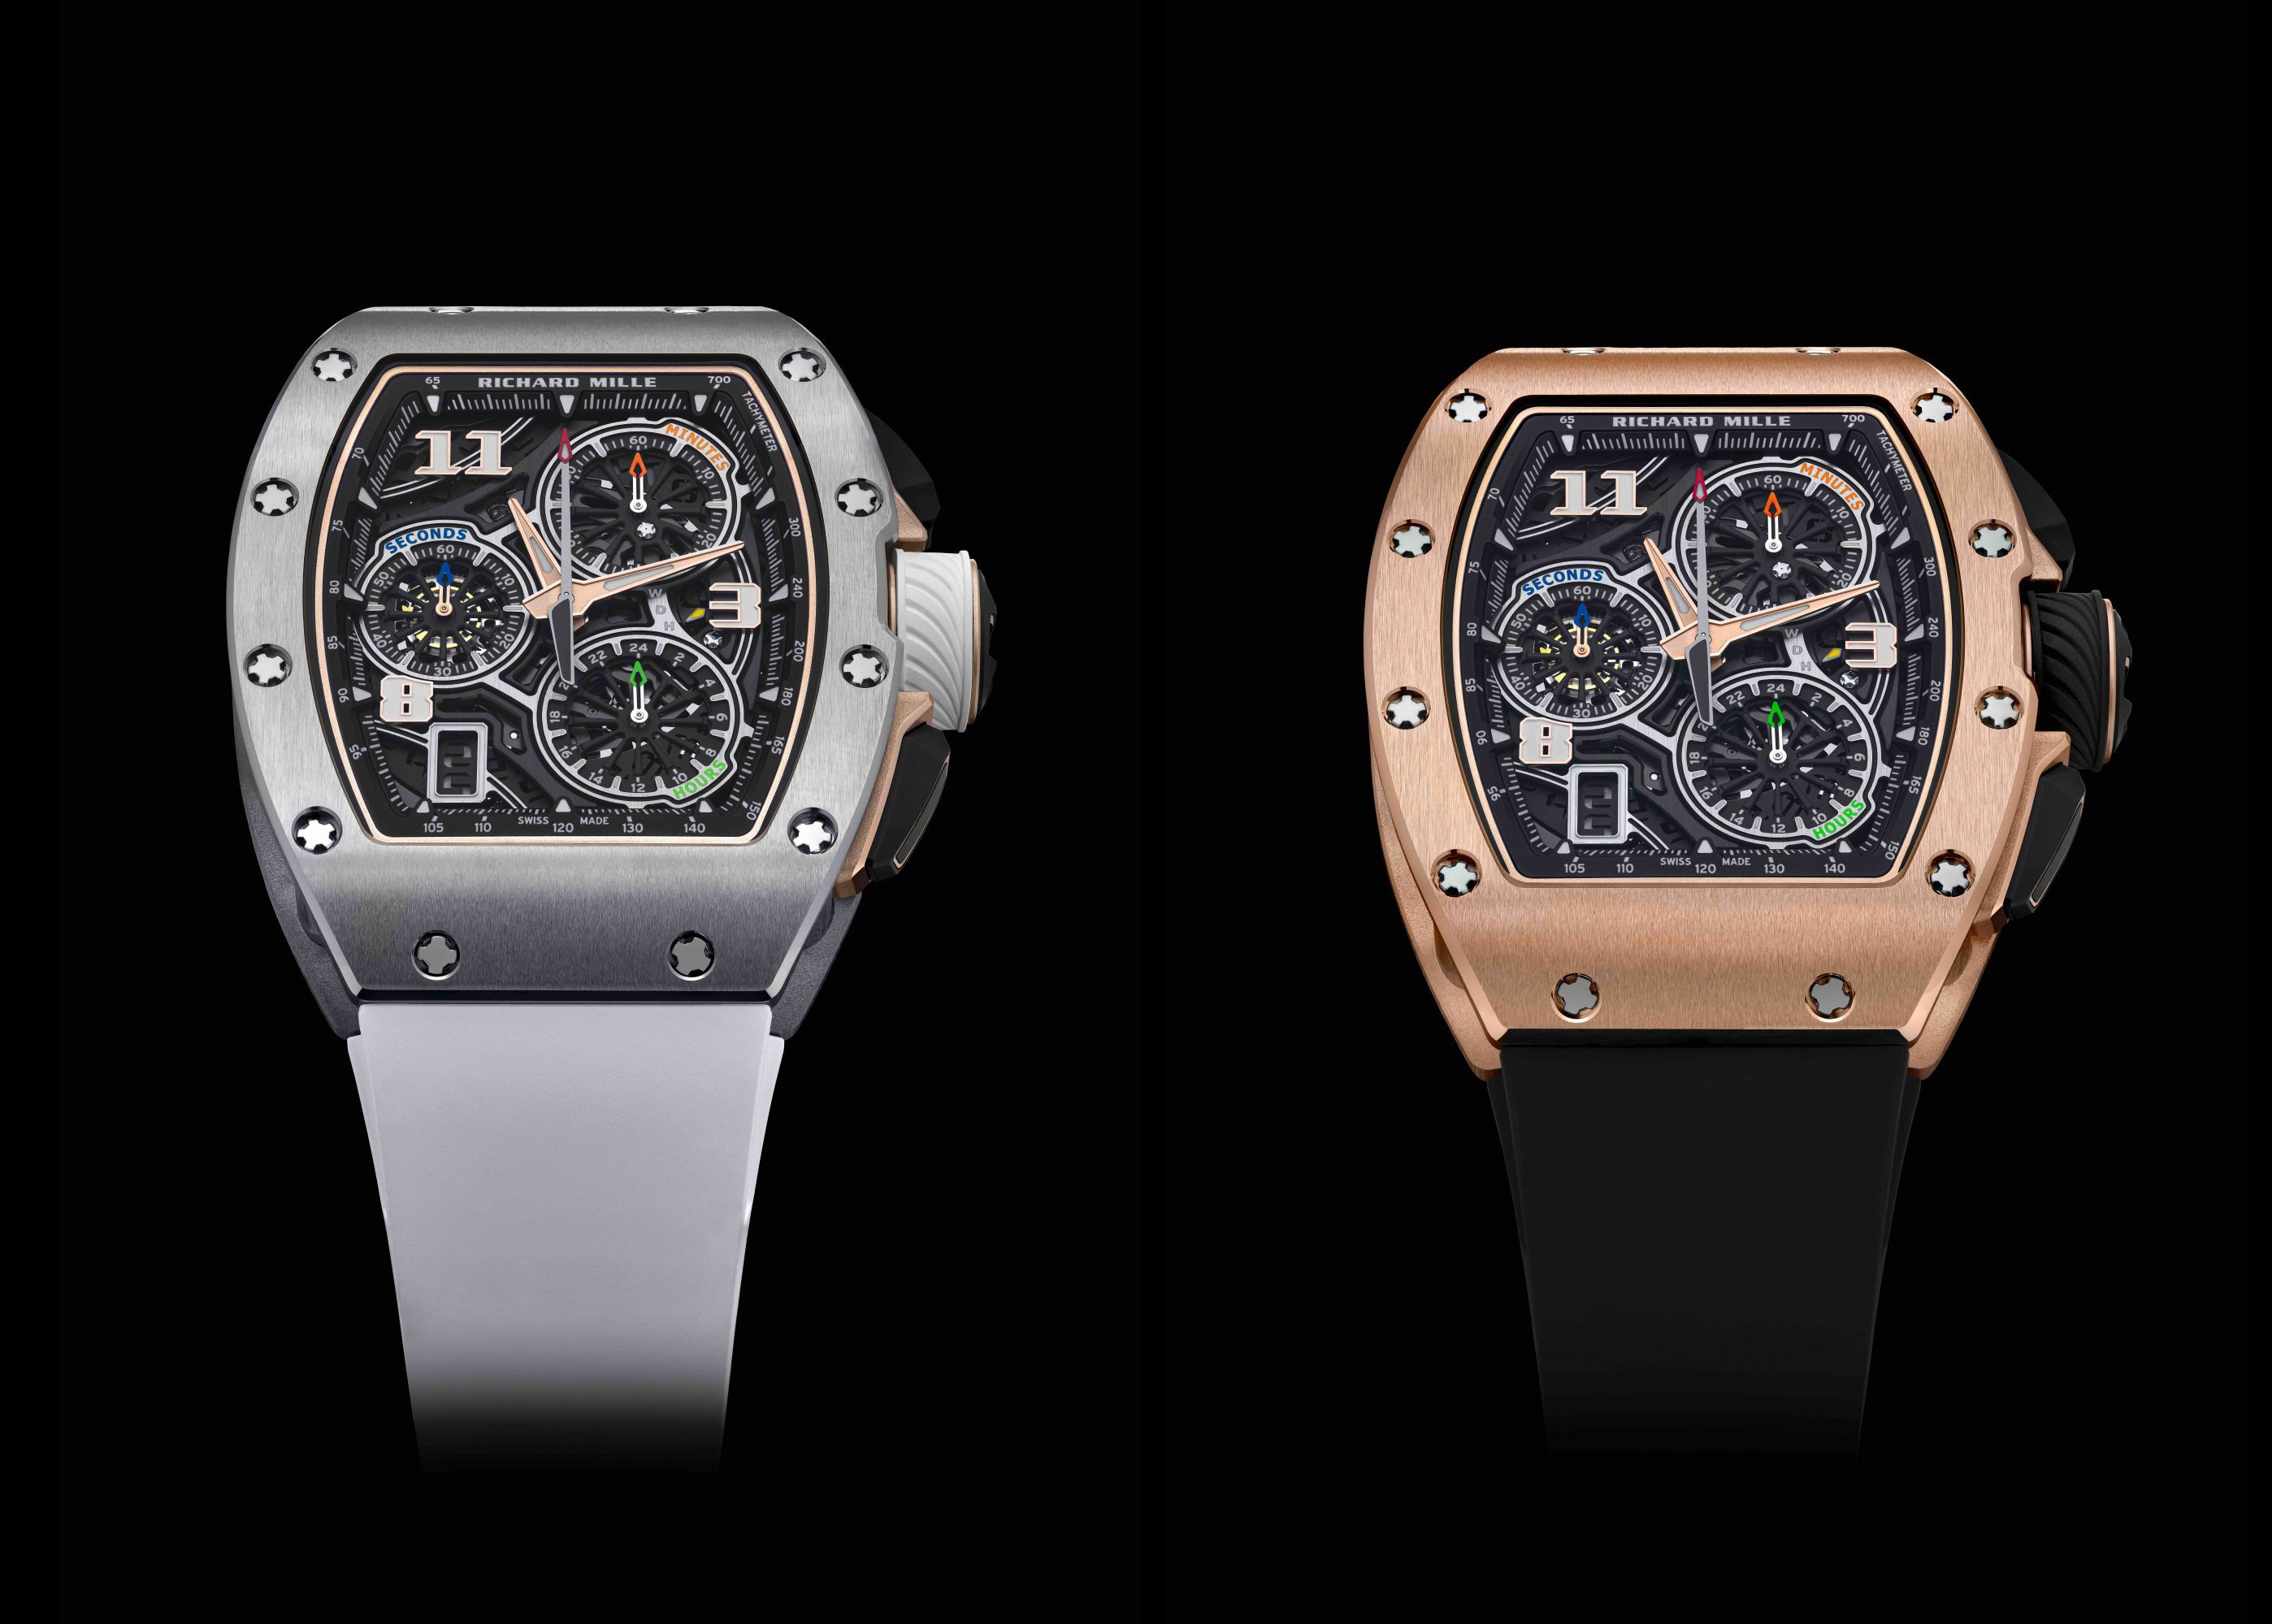 Chiếc đồng hồ mới được Richard Mille trình làng với 2 phiên bản: vàng và titan.